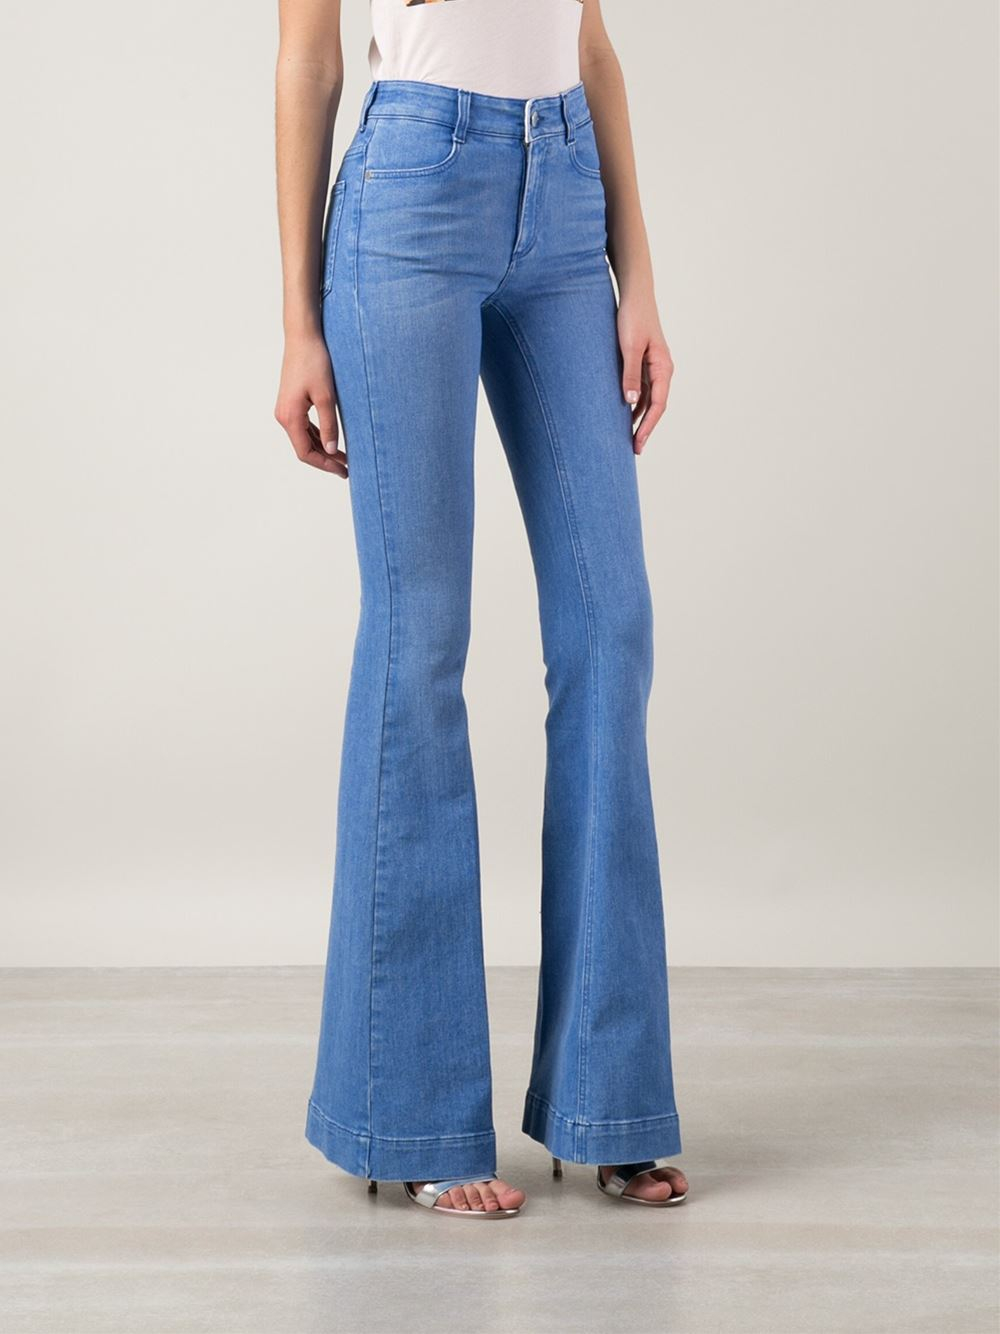 Lyst - Stella Mccartney Flared Jeans in Blue